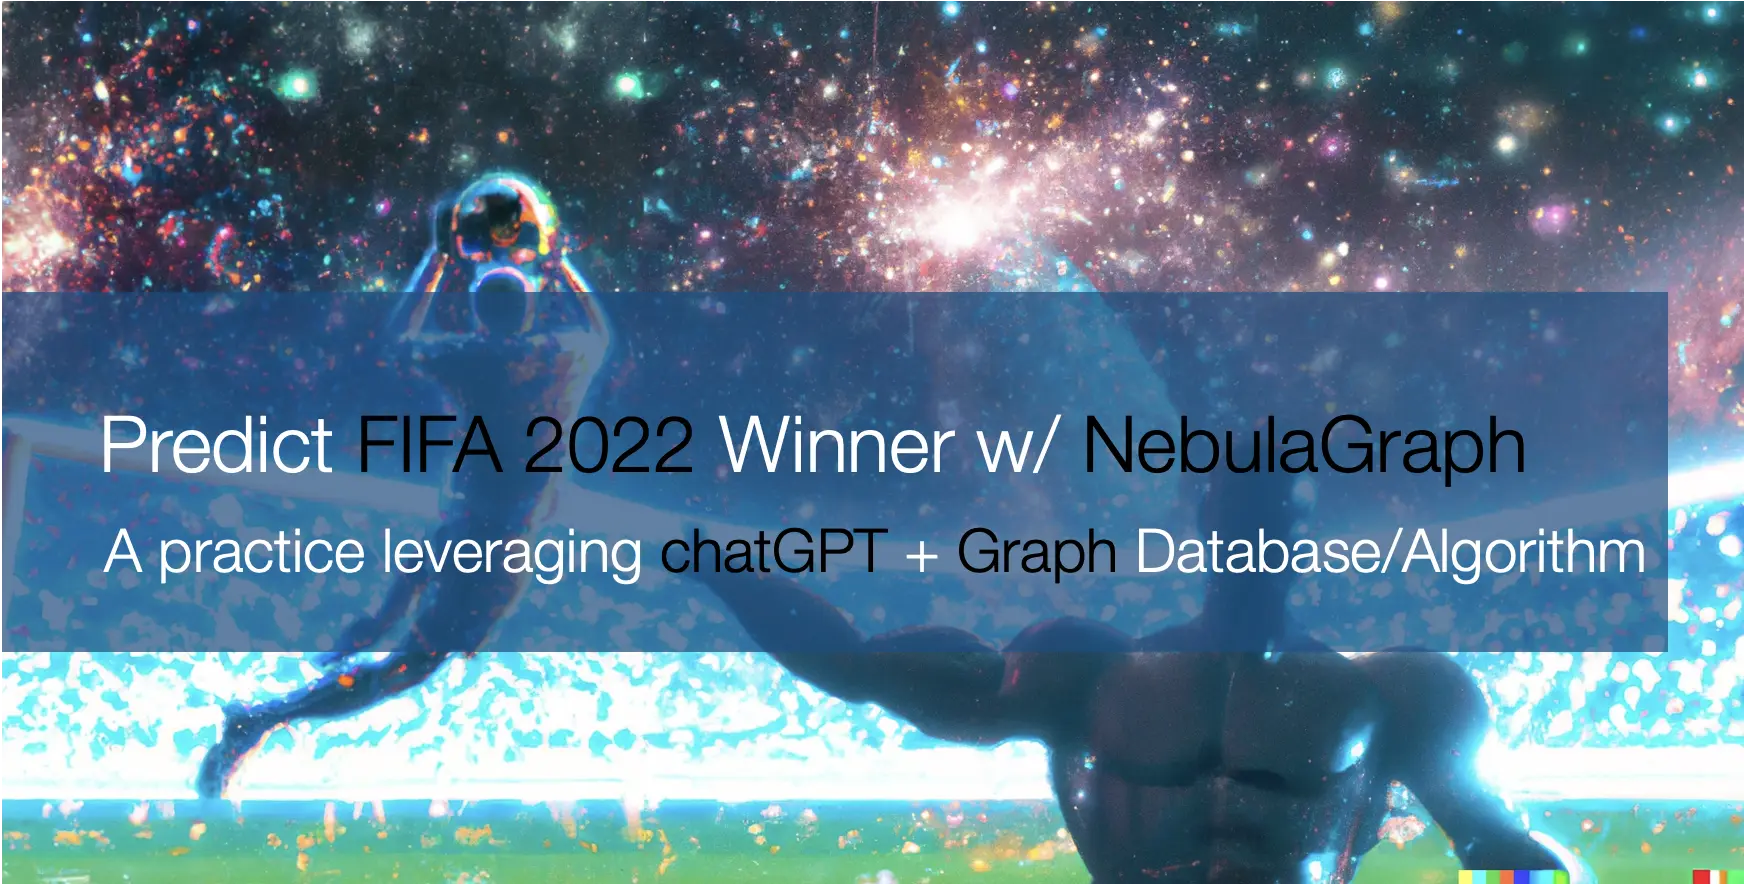 一次利用 chatGPT 给出数据抓取代码，借助 NebulaGraph 图数据库与图算法预测体育赛事的尝试。